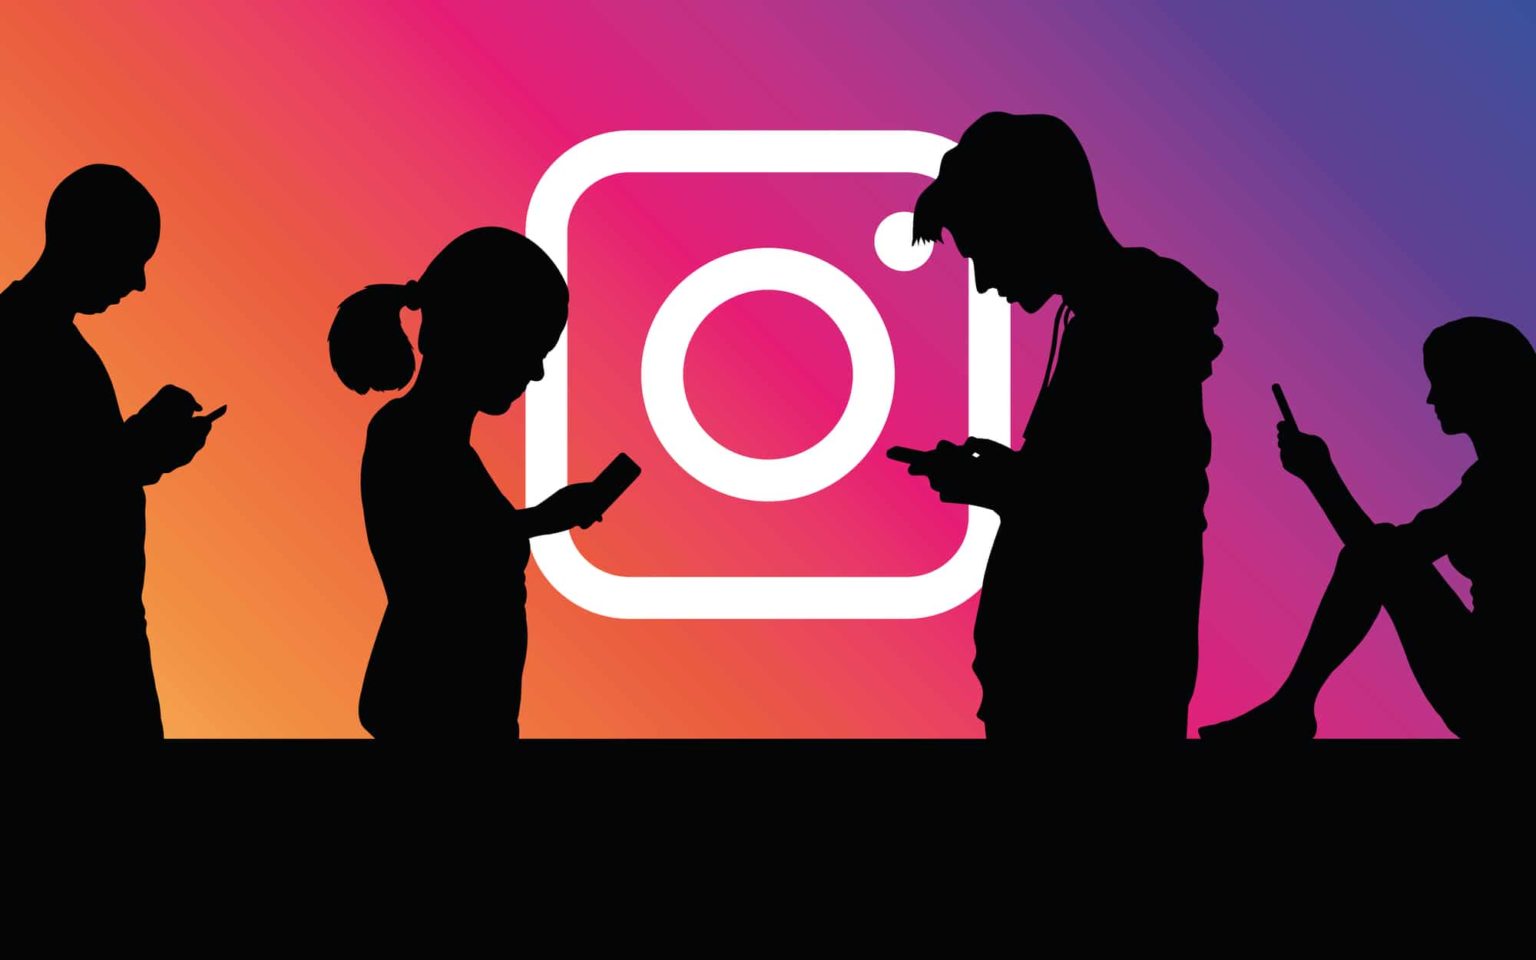 Voyez-vous des captures d’écran sur une story Instagram ?  – Voici la réponse